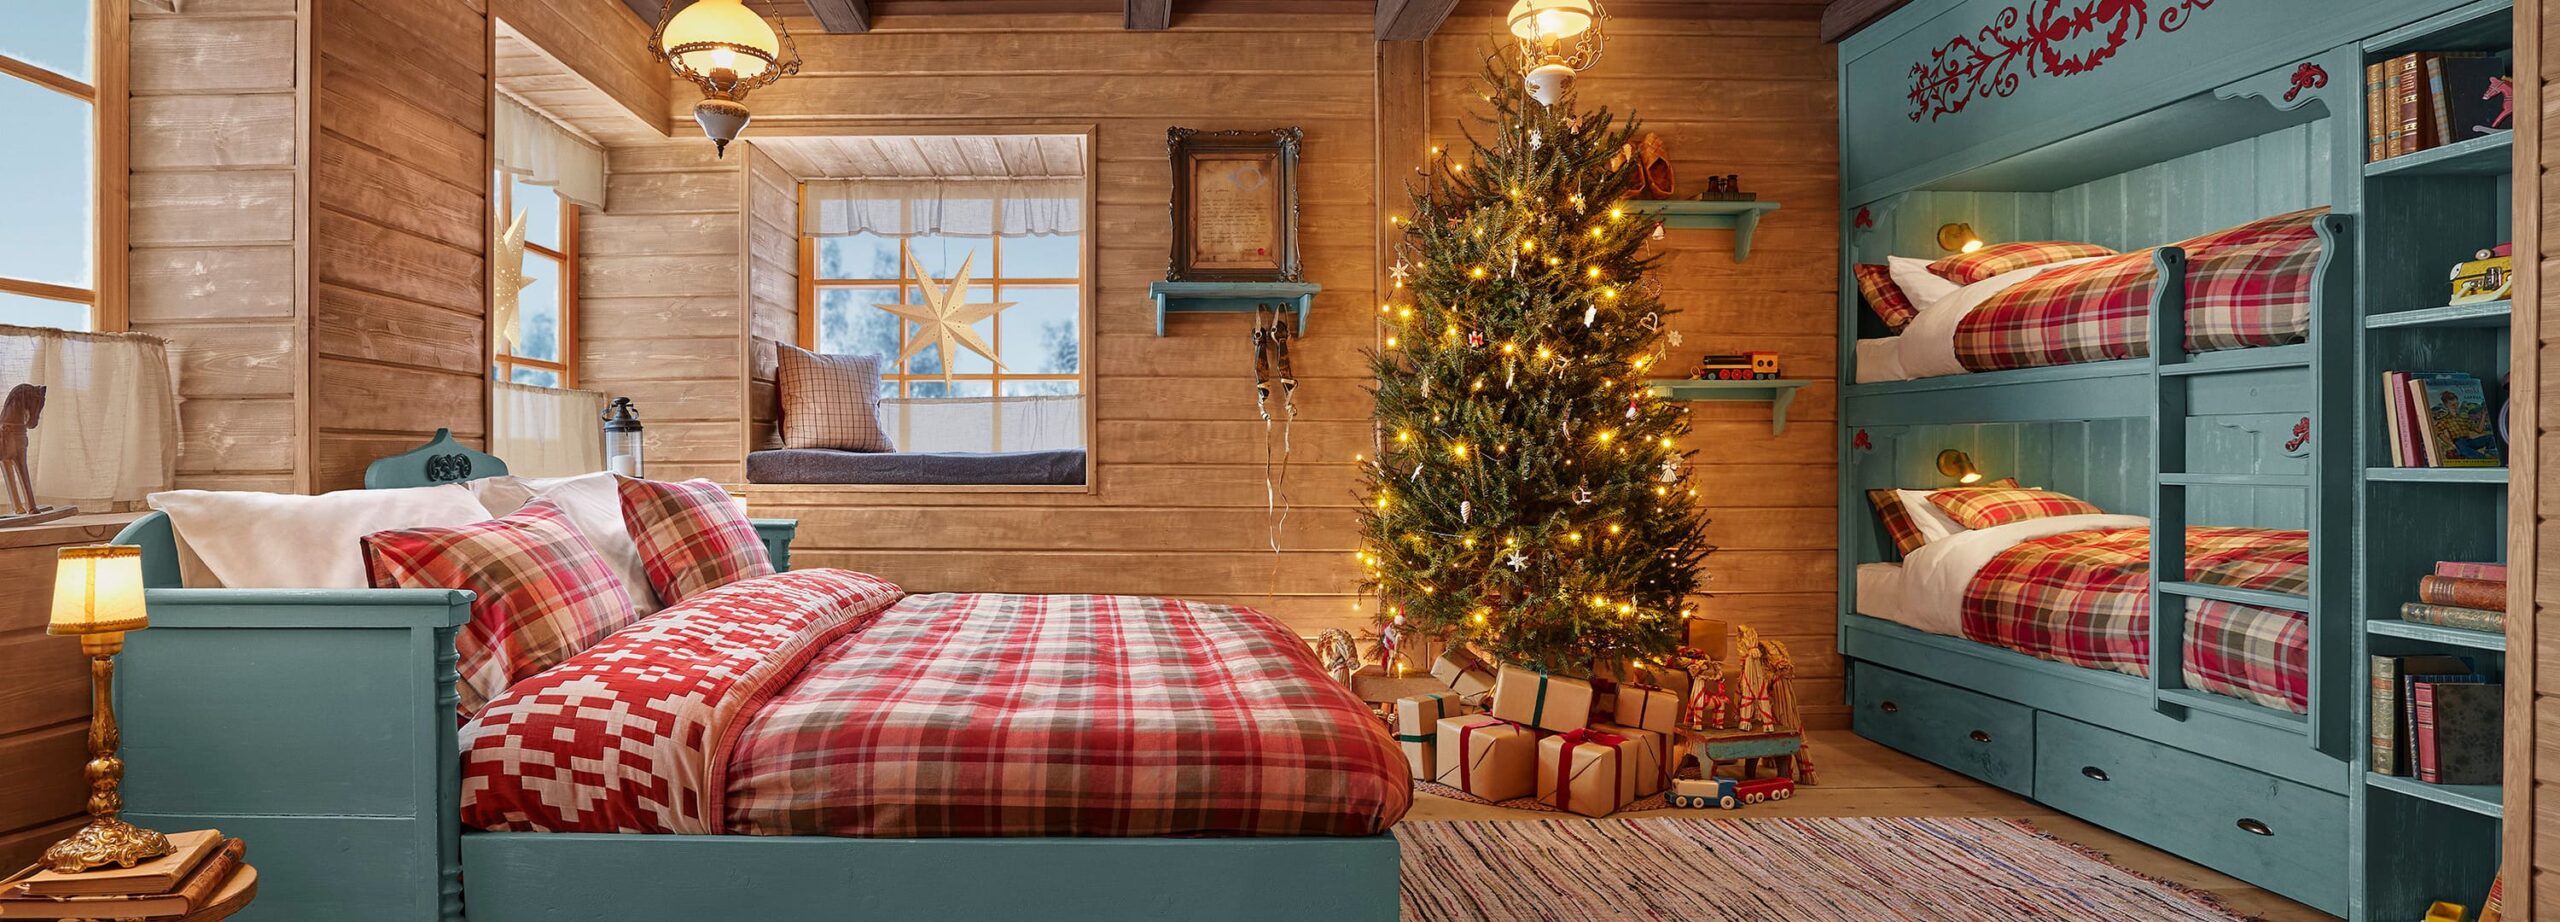 Quarto da Cabana do Papai Noel com cama de casal, árvore de Natal iluminada e beliches ao fundo em um ambiente rústico e festivo.